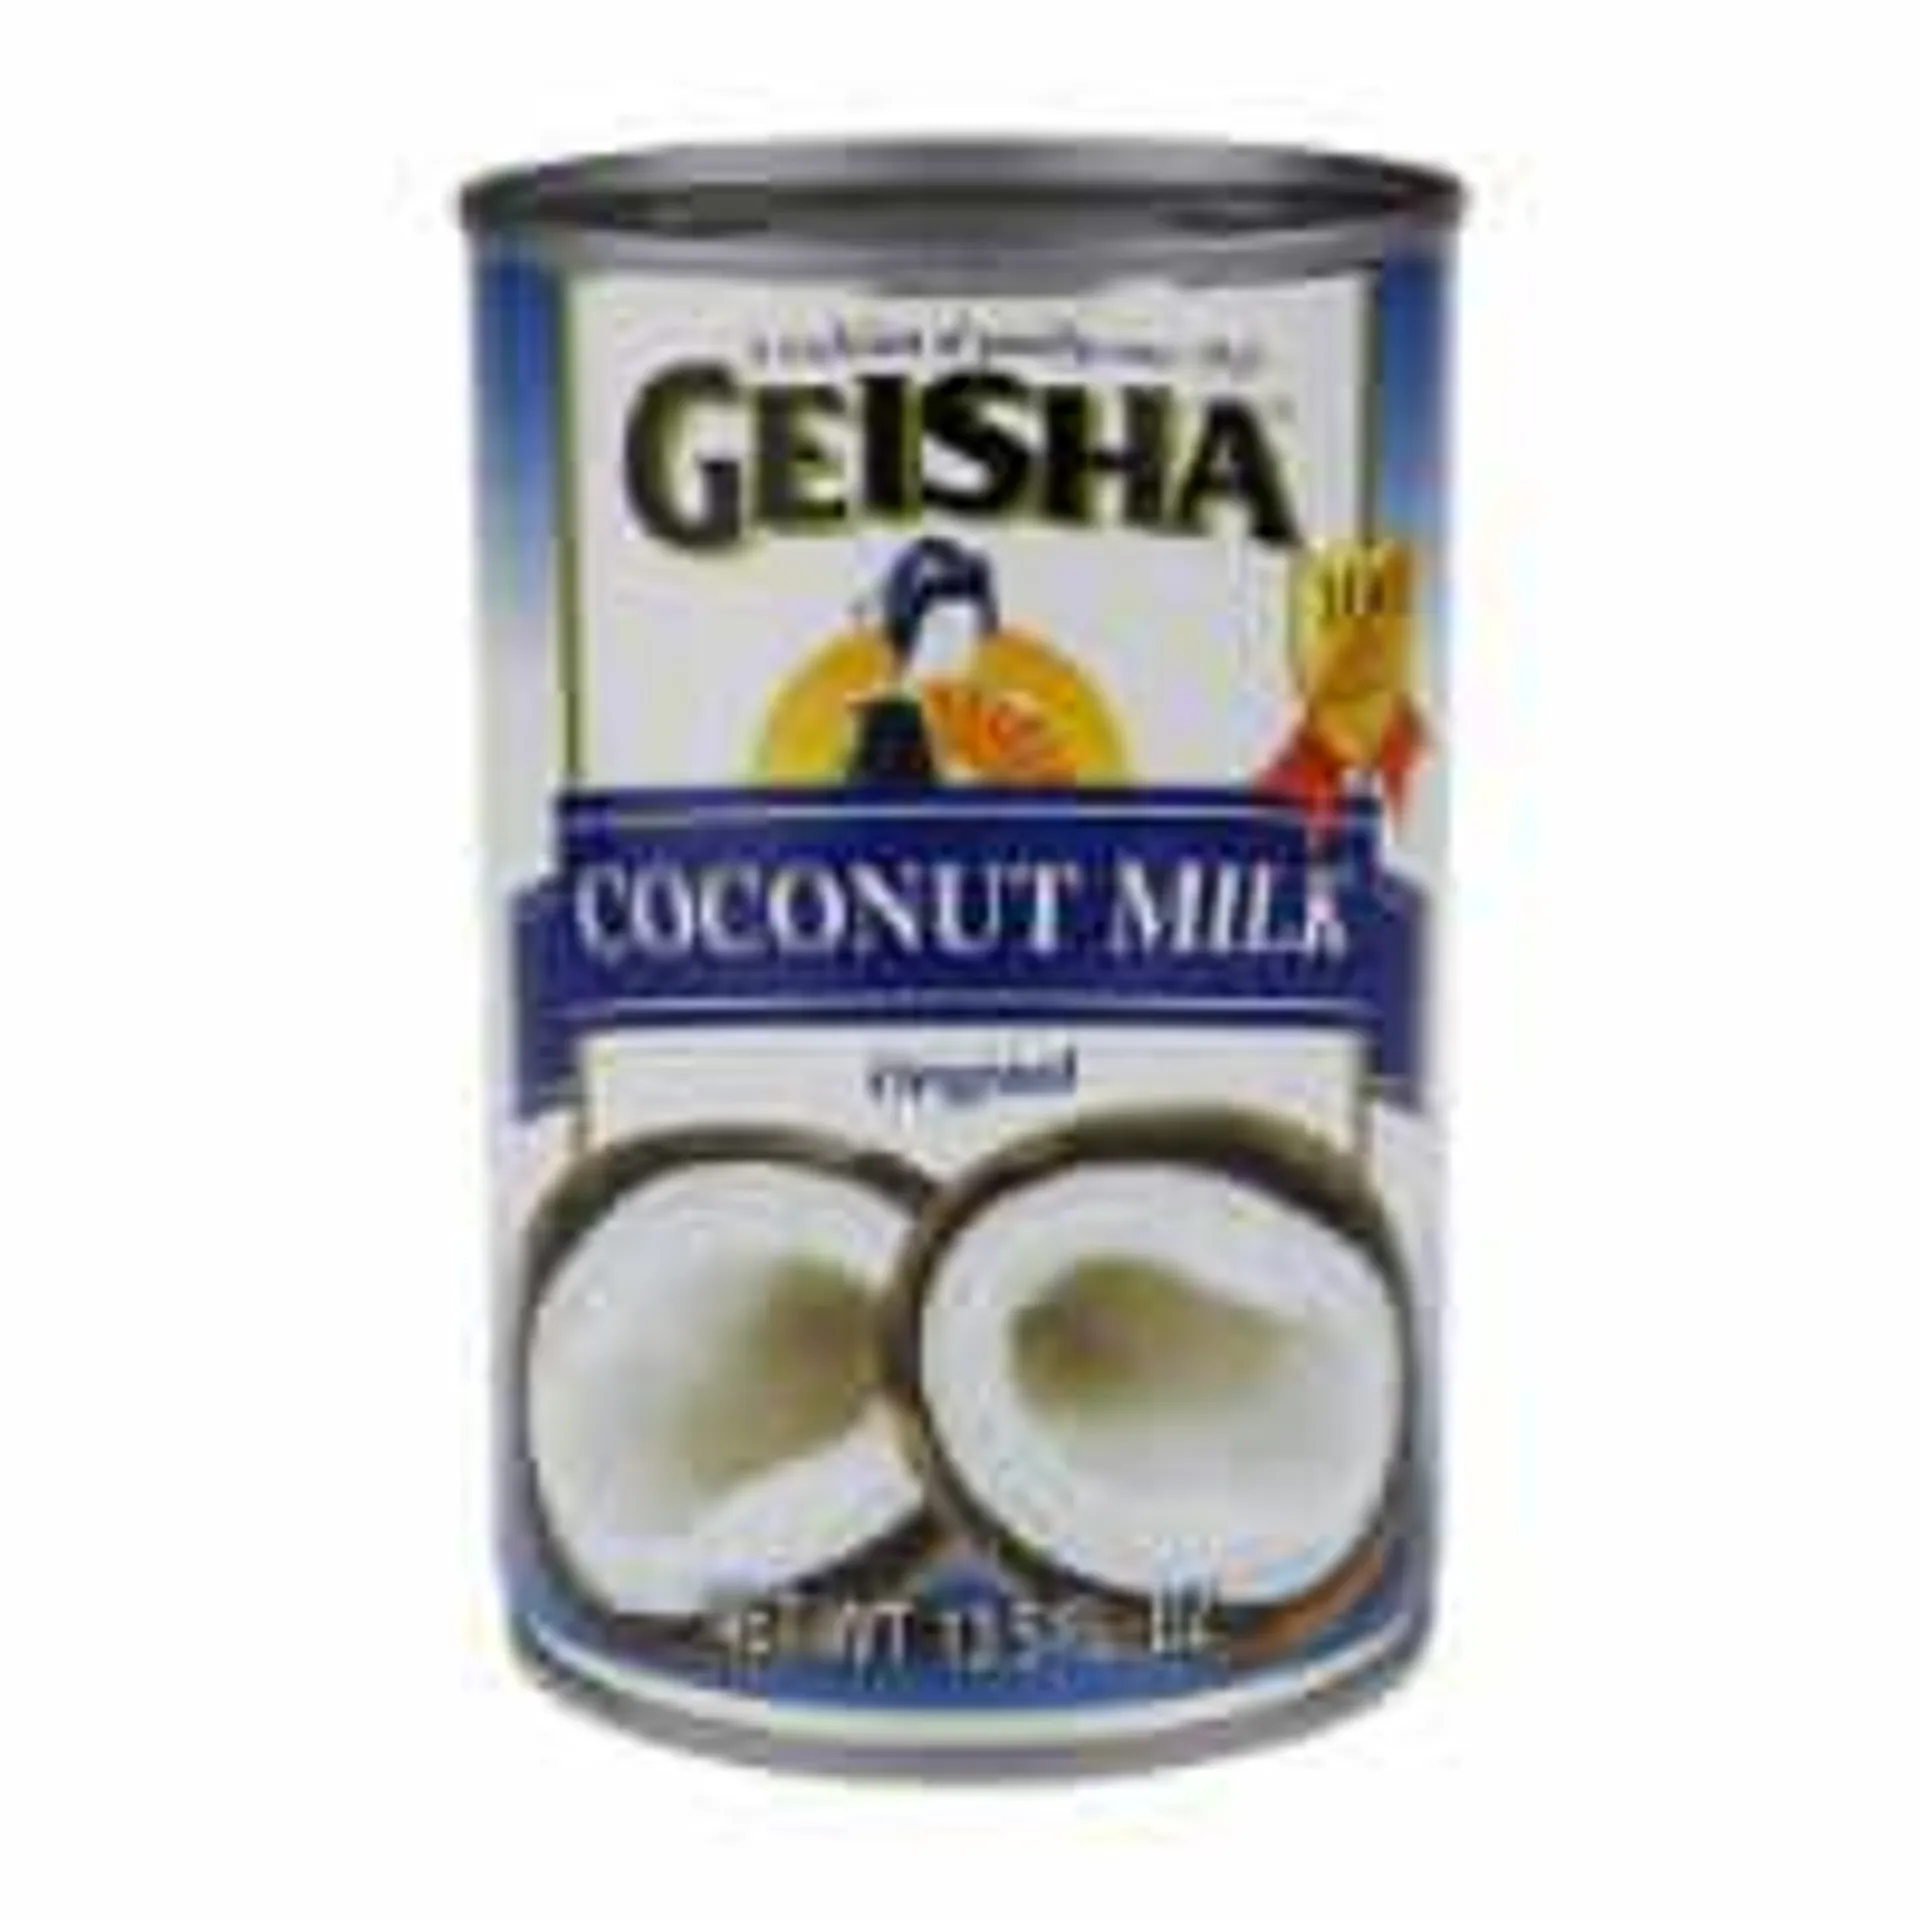 Geisha, Coconut Milk, Original (Pack of 8)